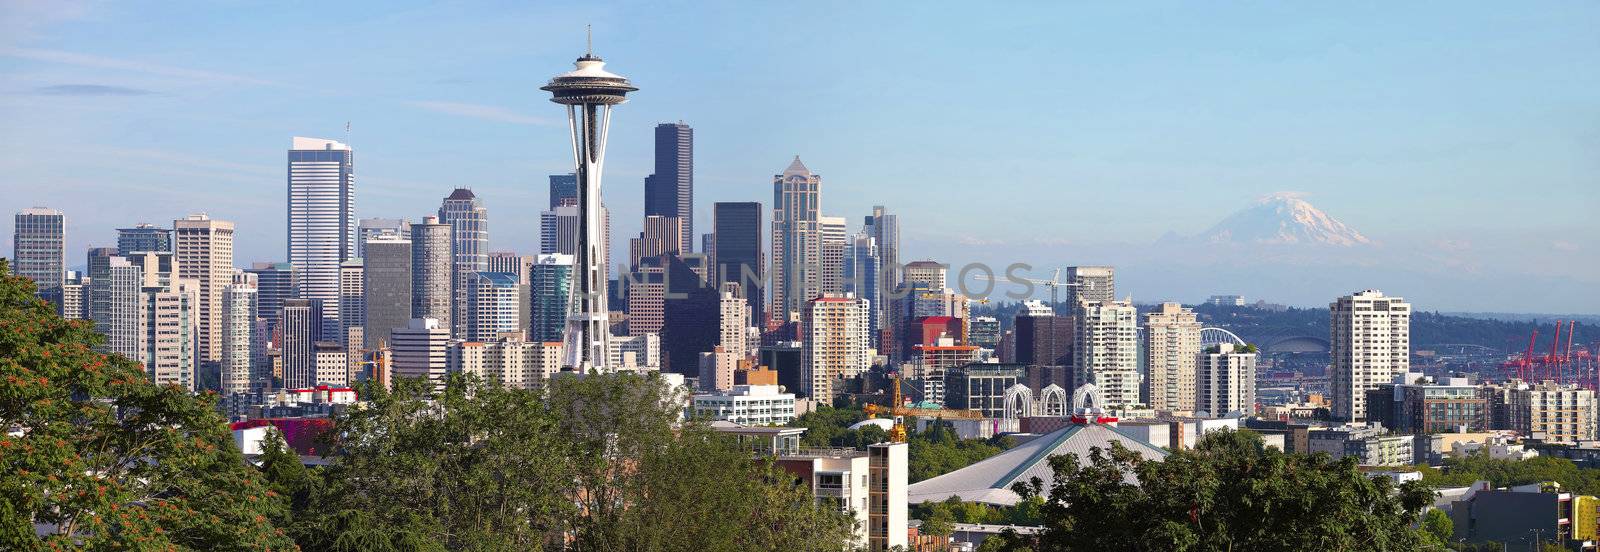 Seattle Washington skyline panorama & Mt. Rainier.